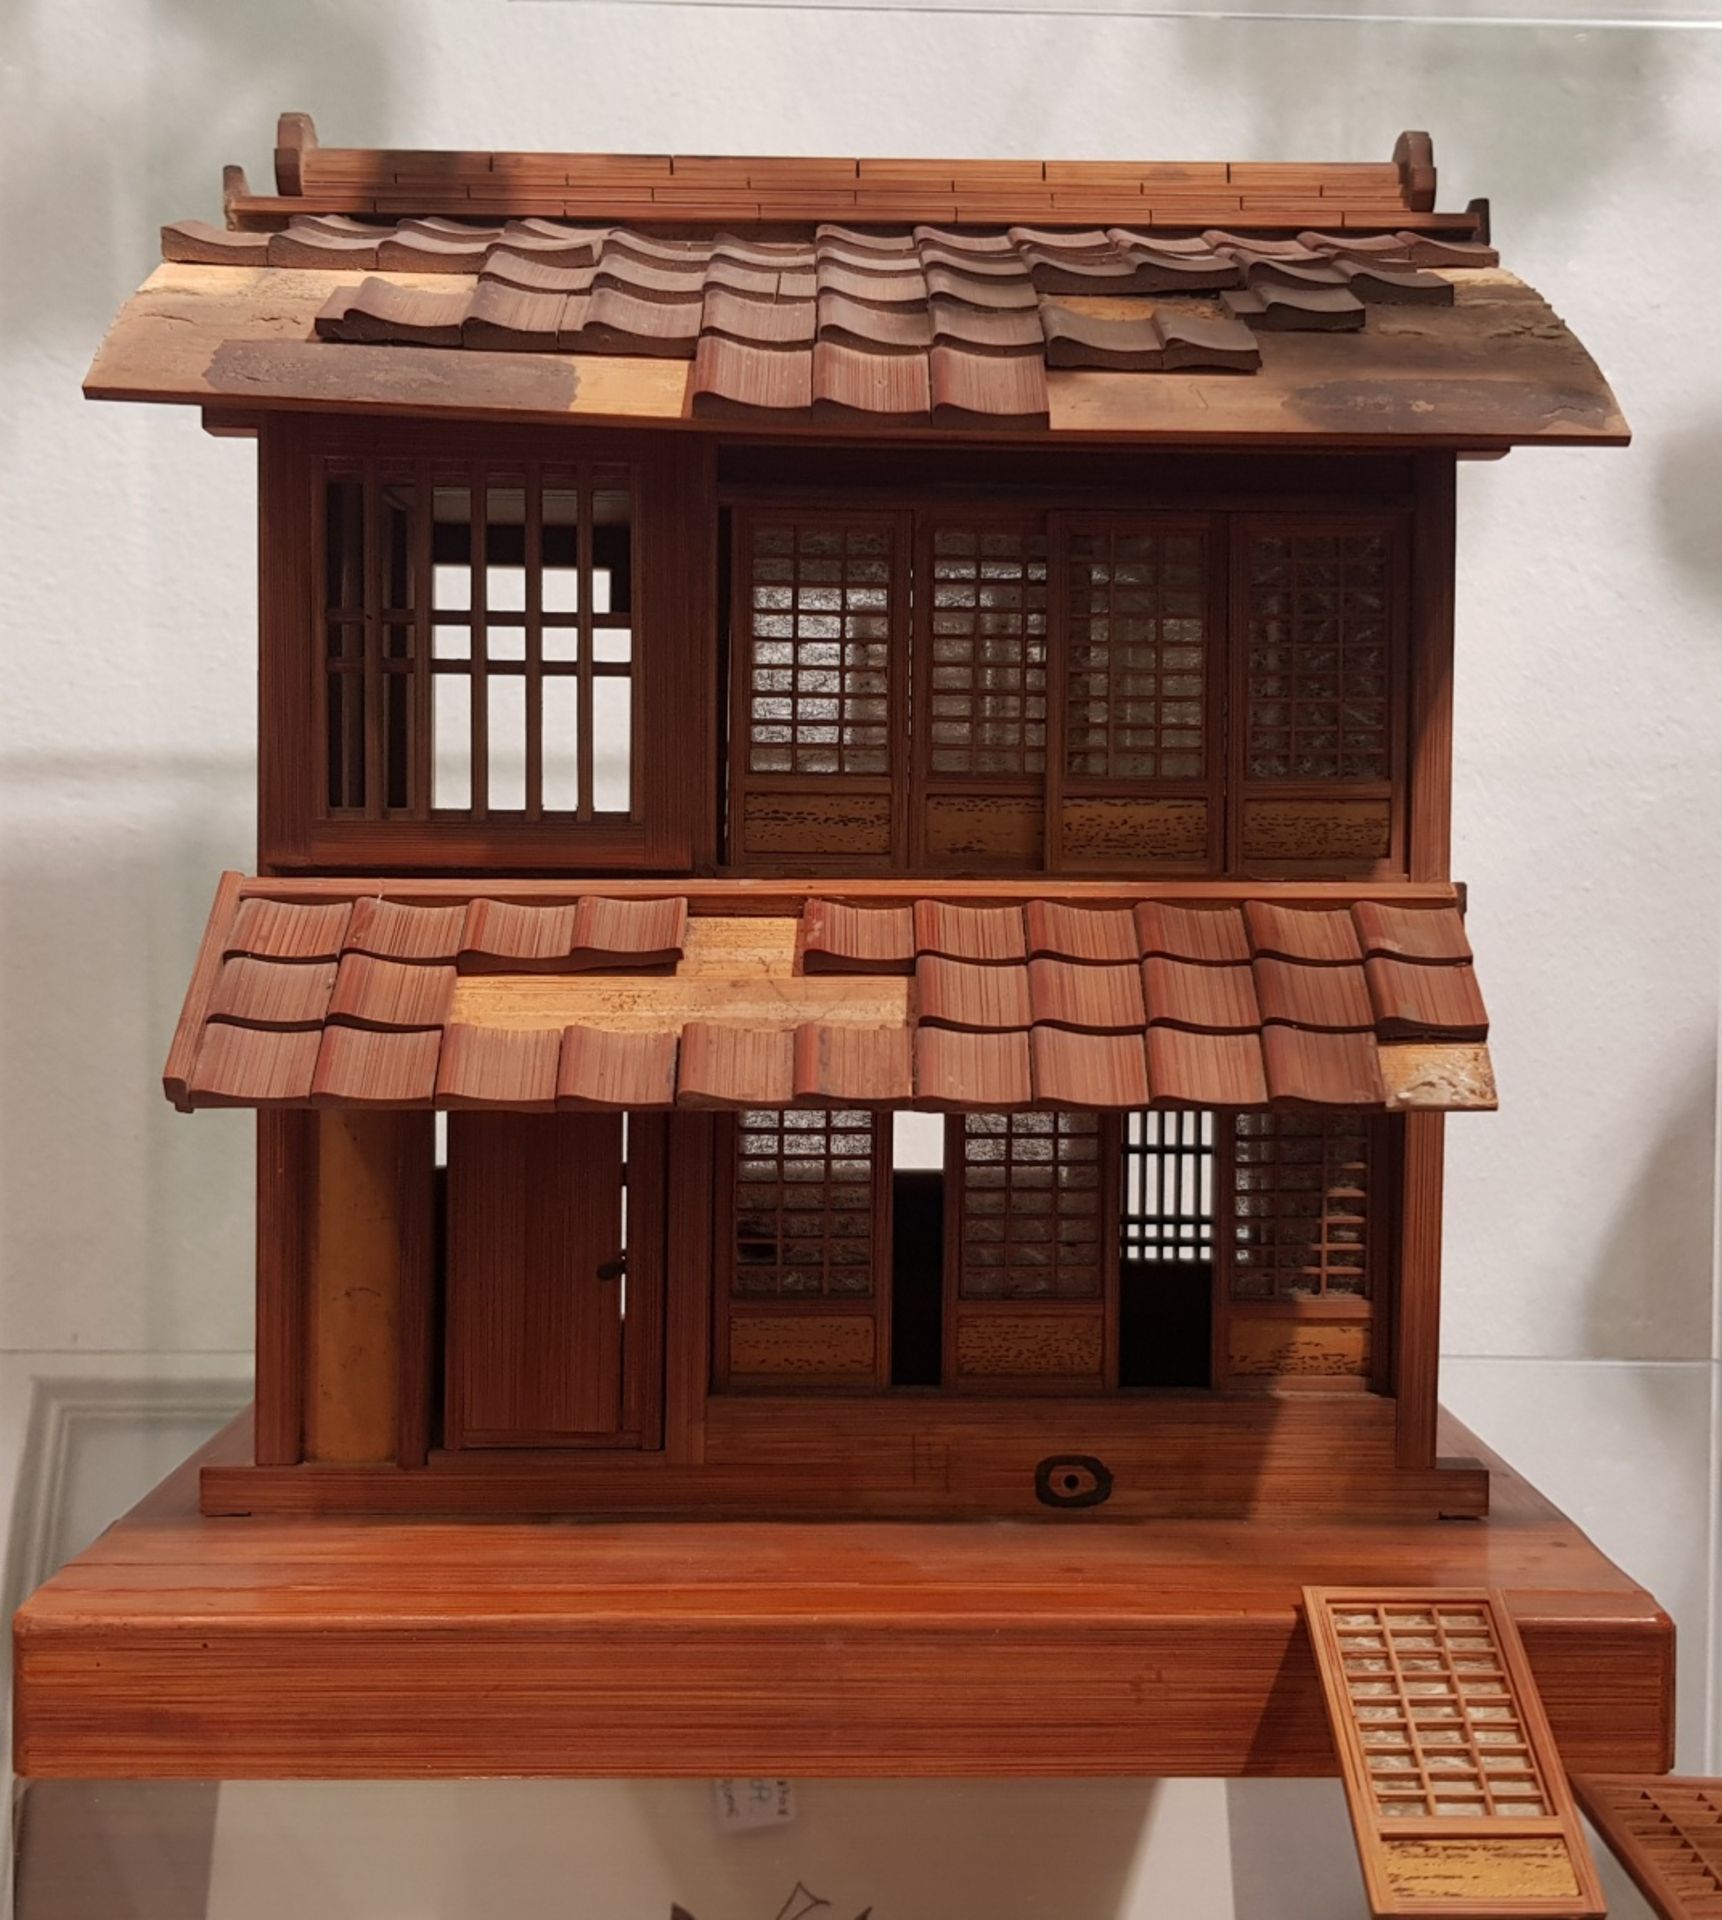 Modellhaus aus Holz / Kinderspielzeug, Japan, Meiji Zeit.